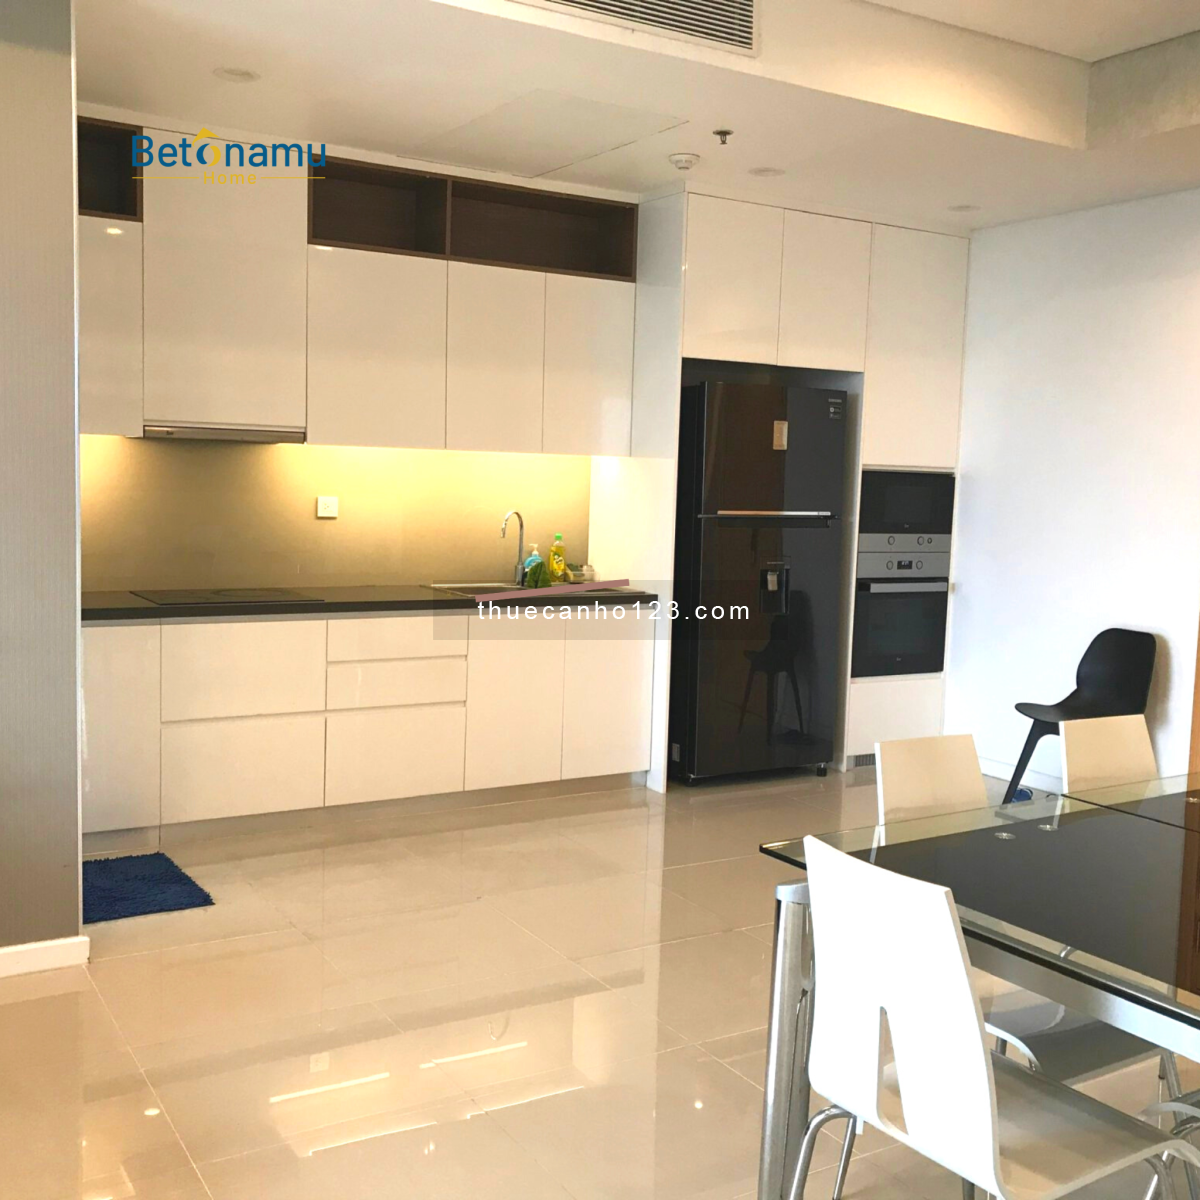 Betonamu Home cho thuê căn hộ Sarimi 3PN - giá siêu hạt dẻ so với thị trường